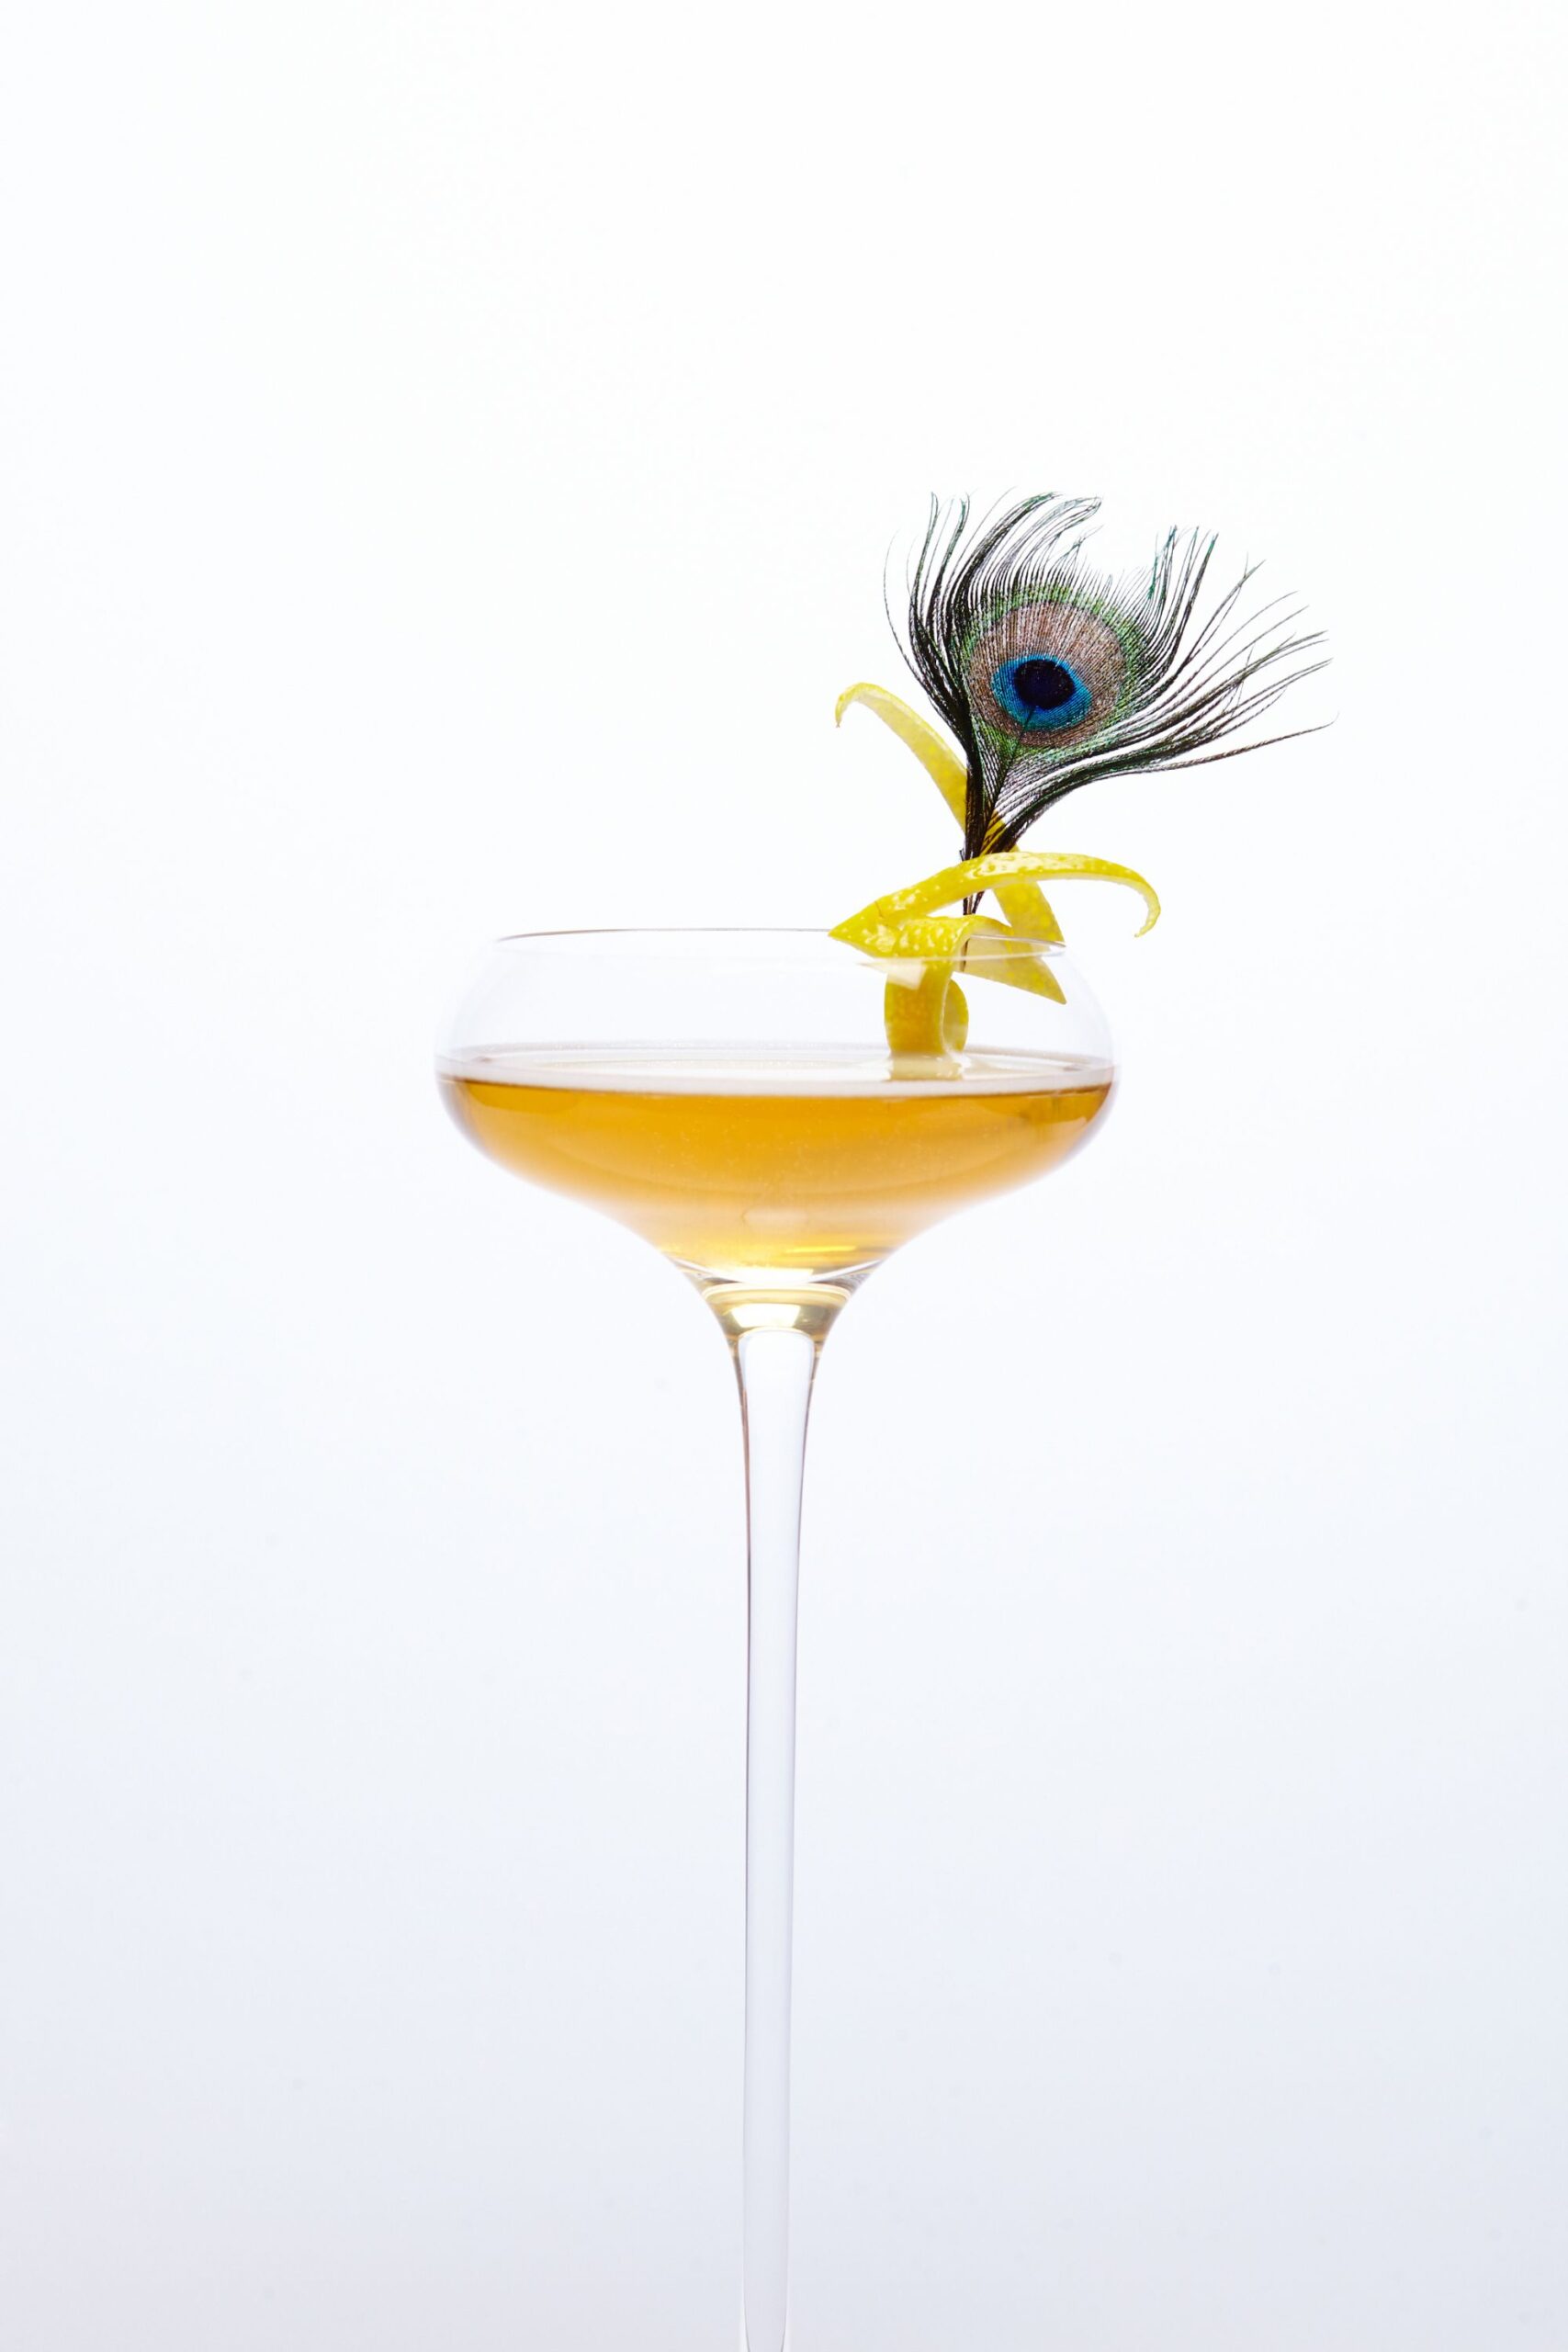 Le cocktail 365